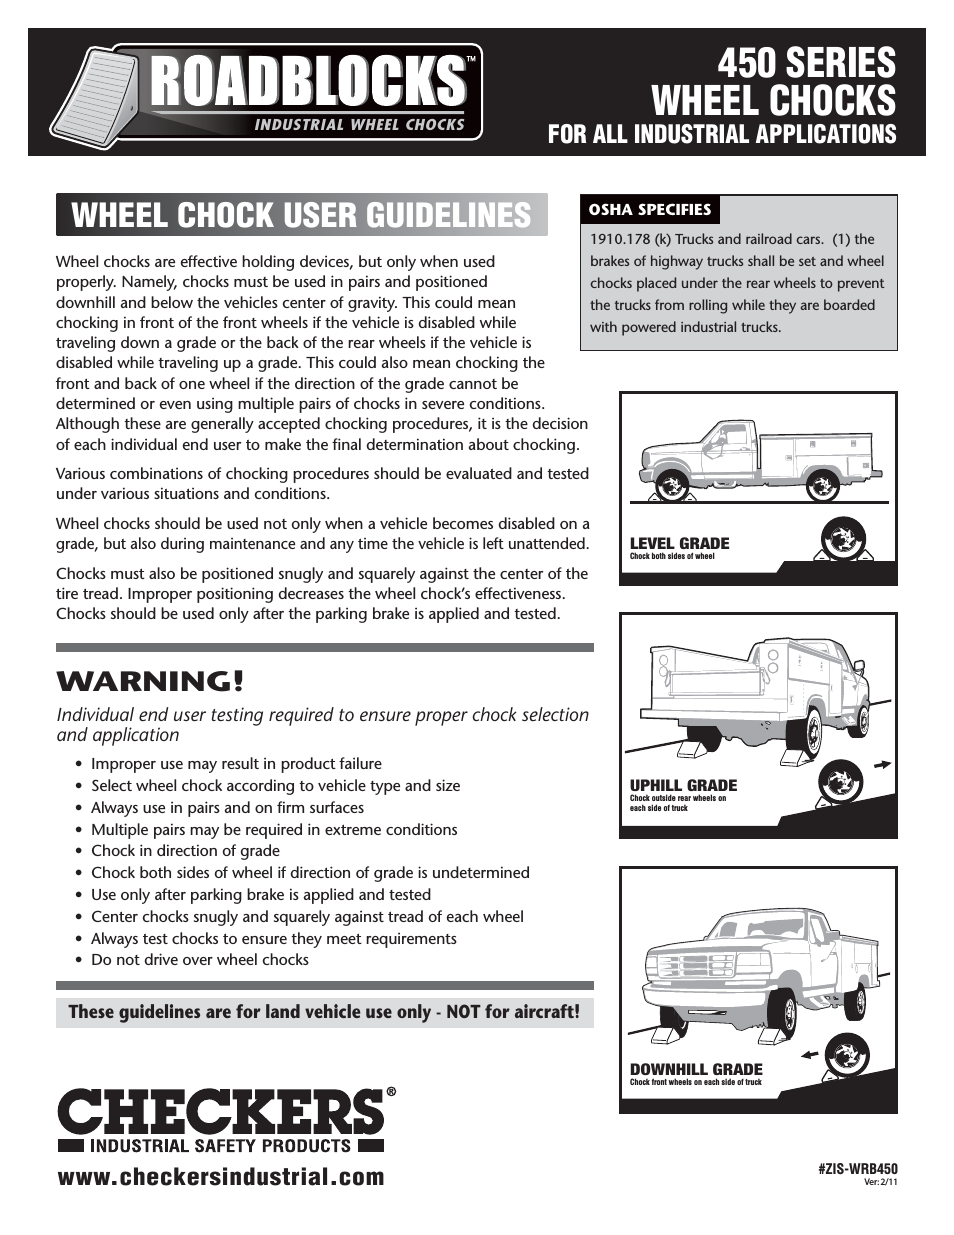 Roadblocks 450 Wheel Chocks User Guidelines